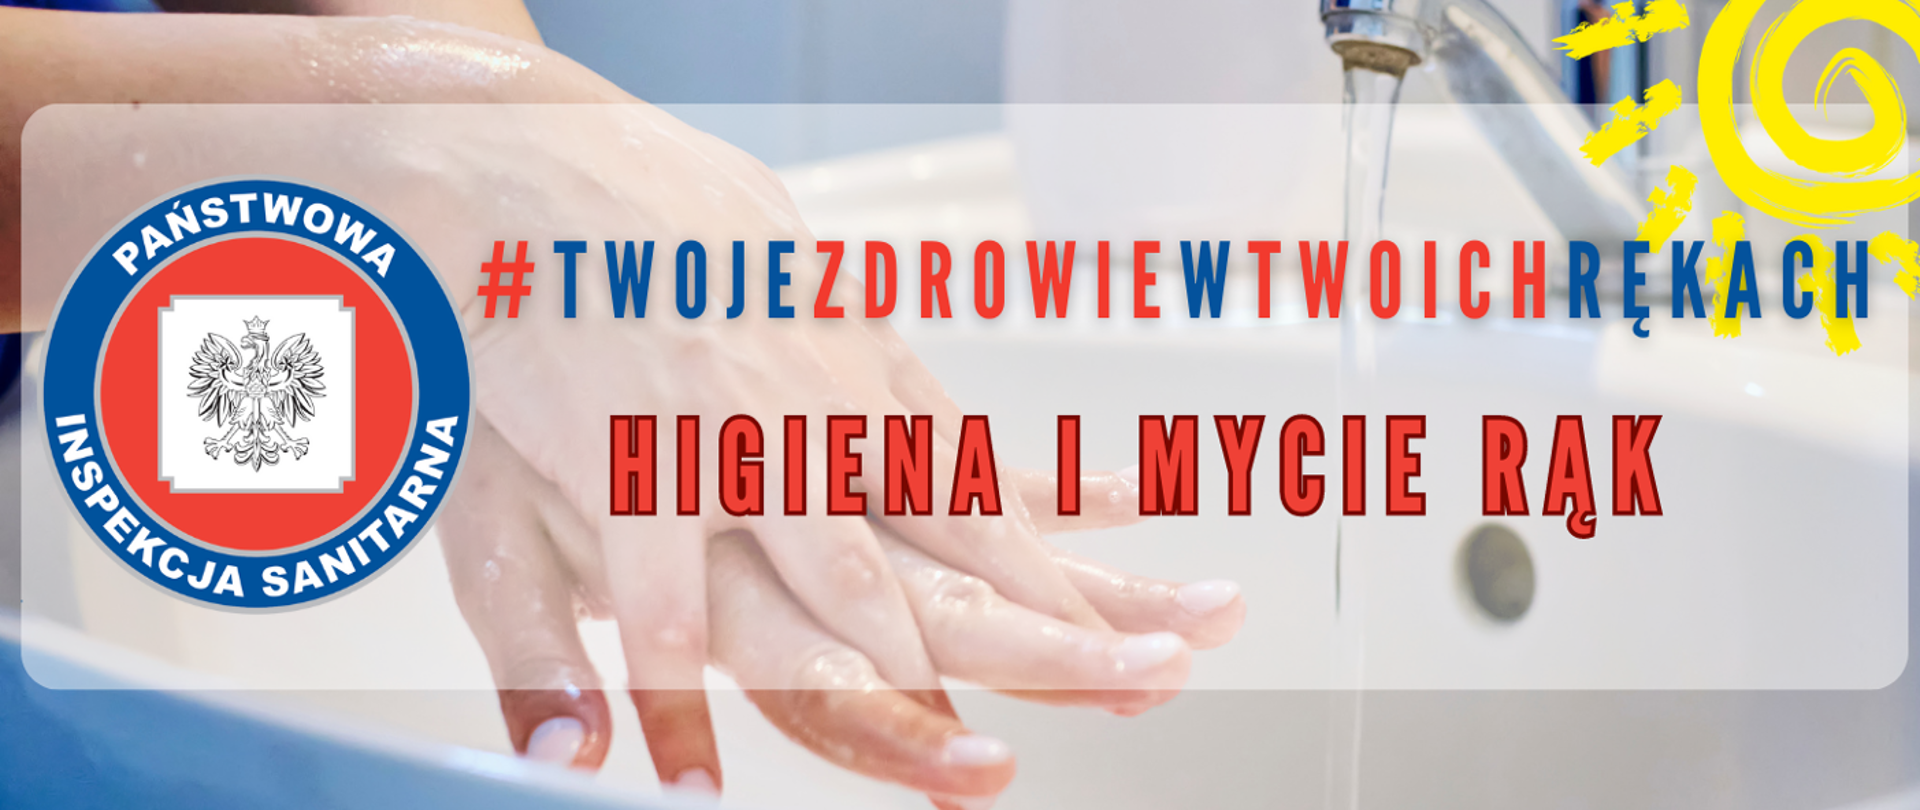 Higiena i mycie rąk